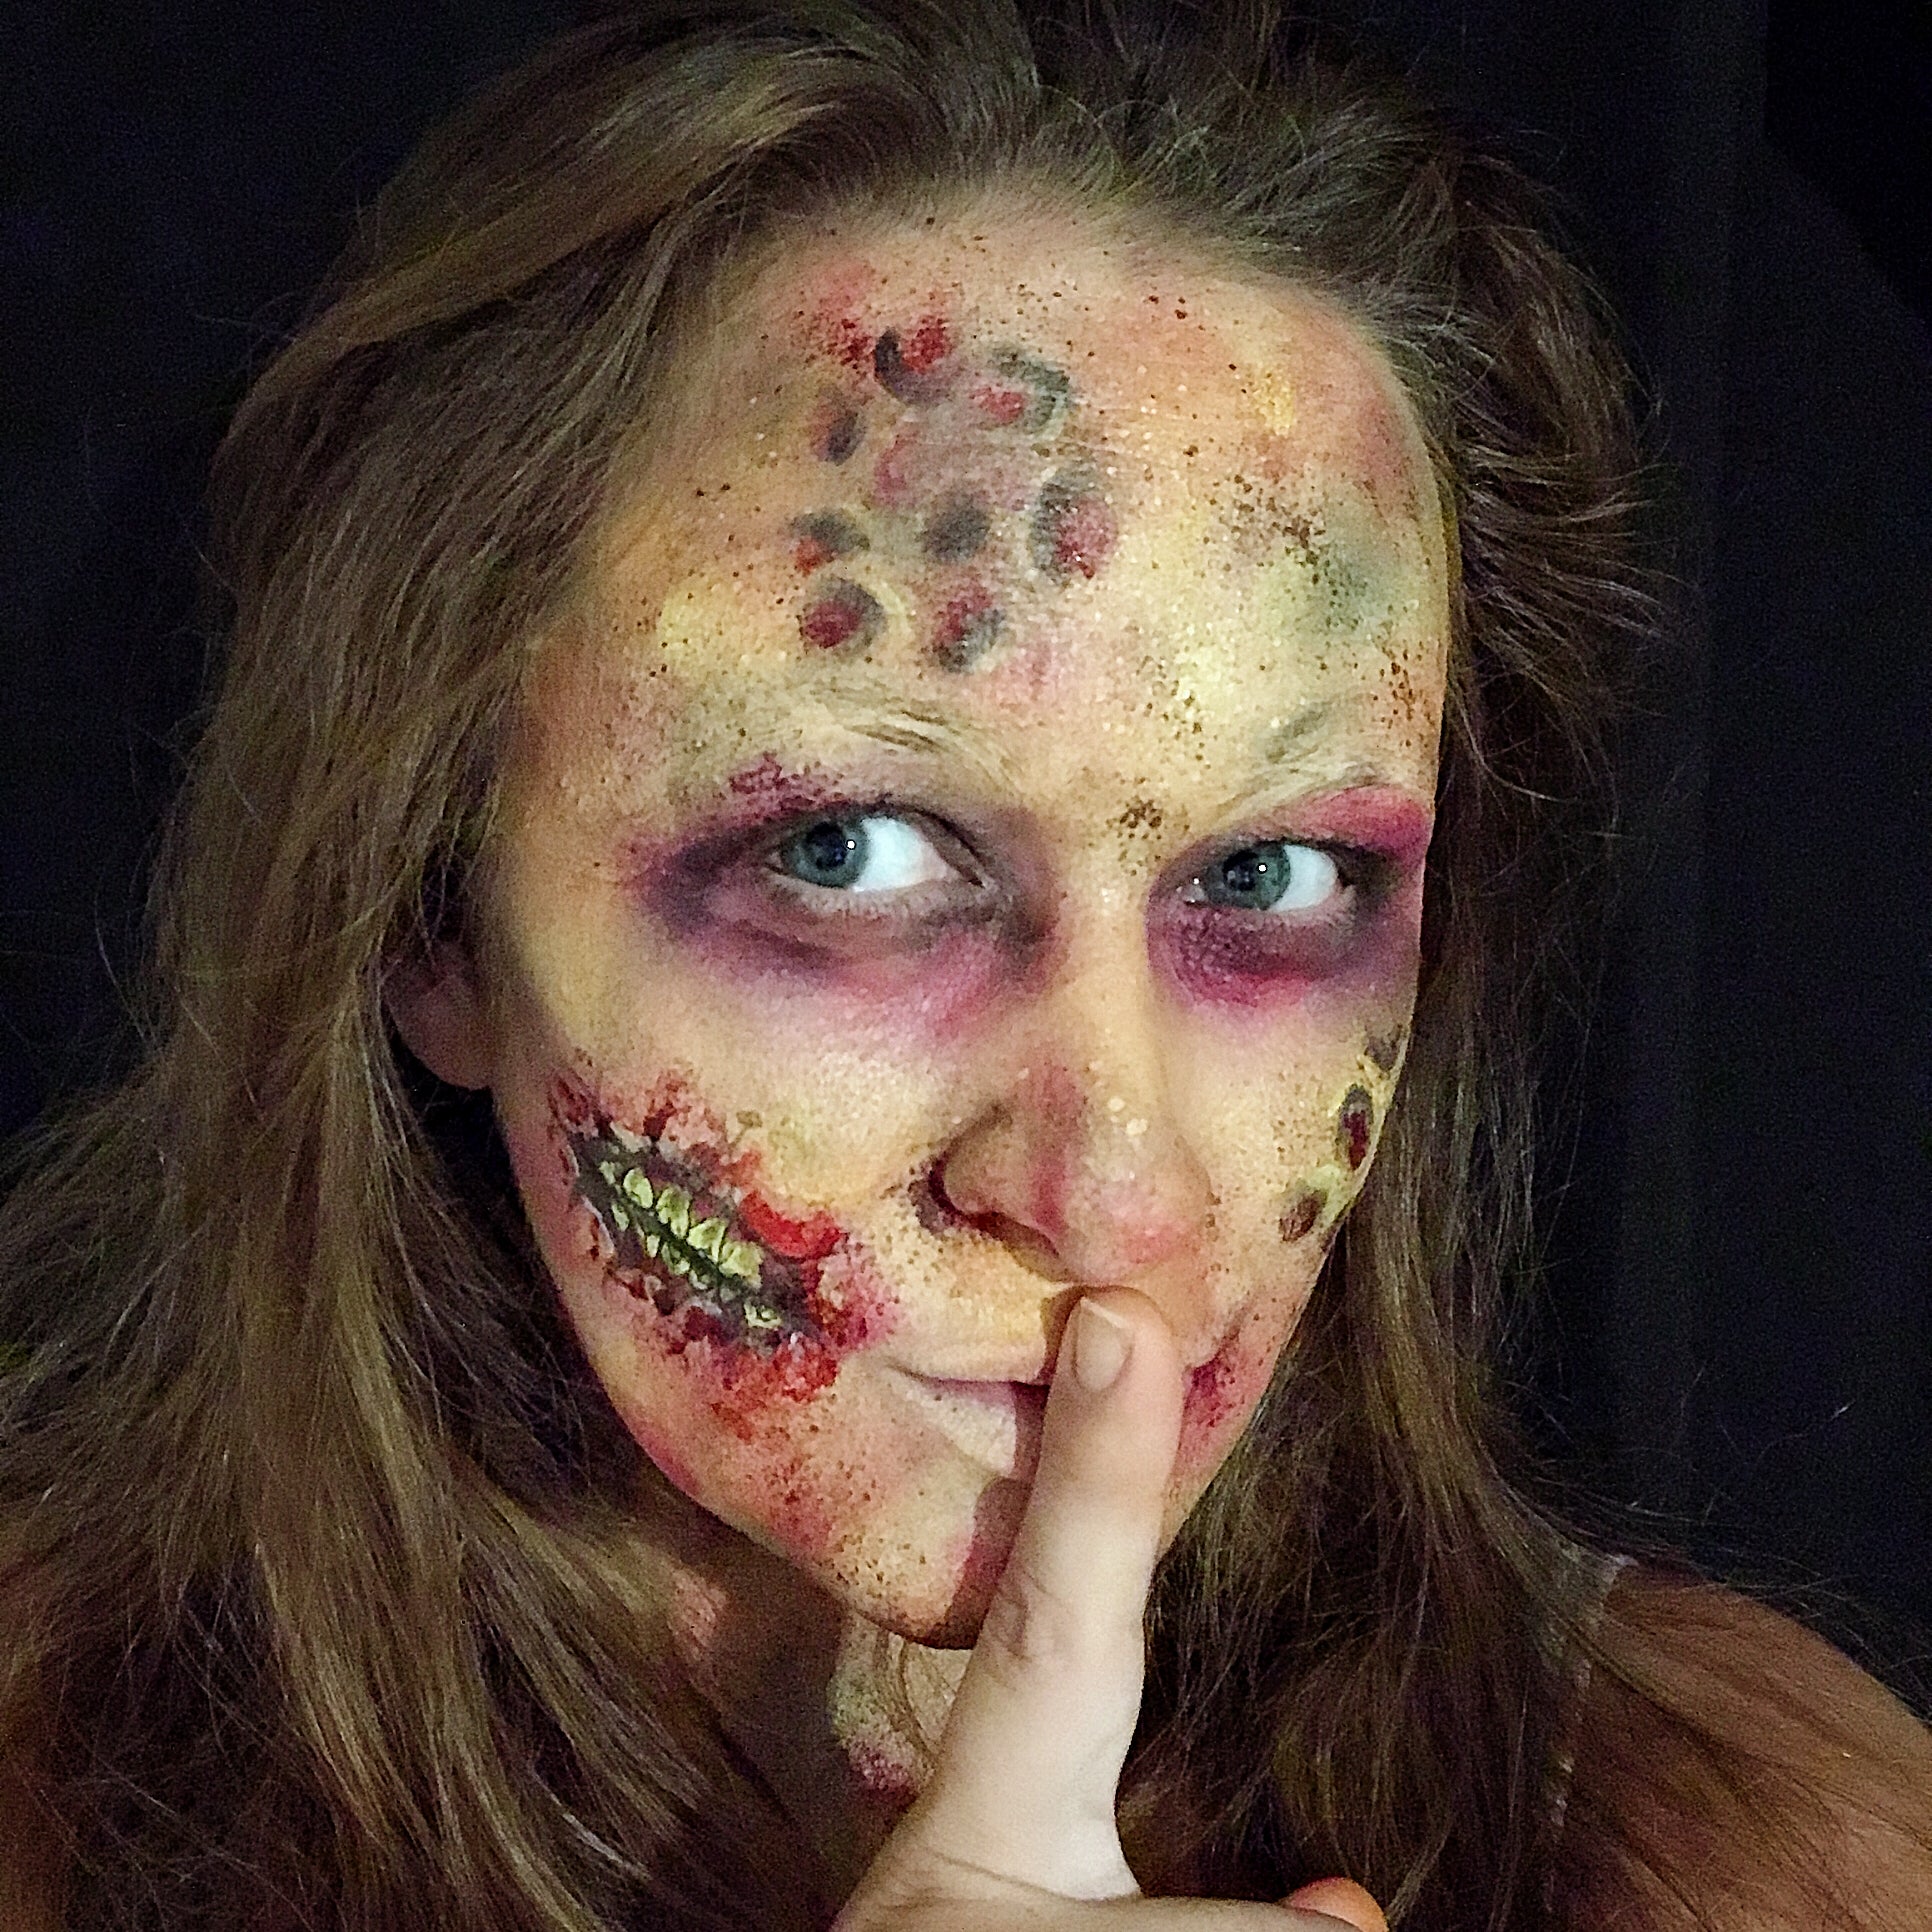 Realistic Creepy Zombie Look by Marina